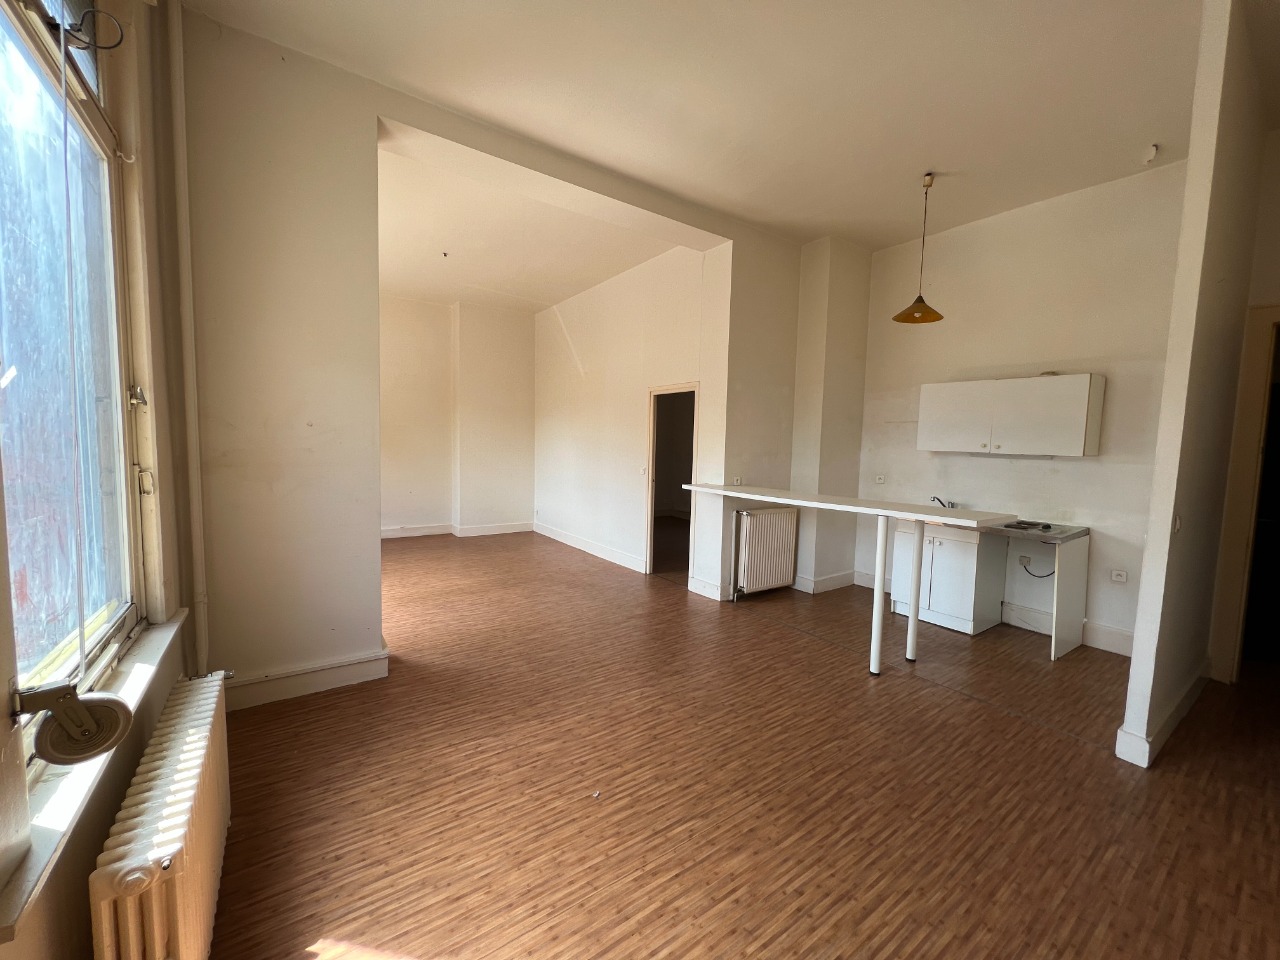 Vente appartement 59130 Lambersart - T2 avec cour privative